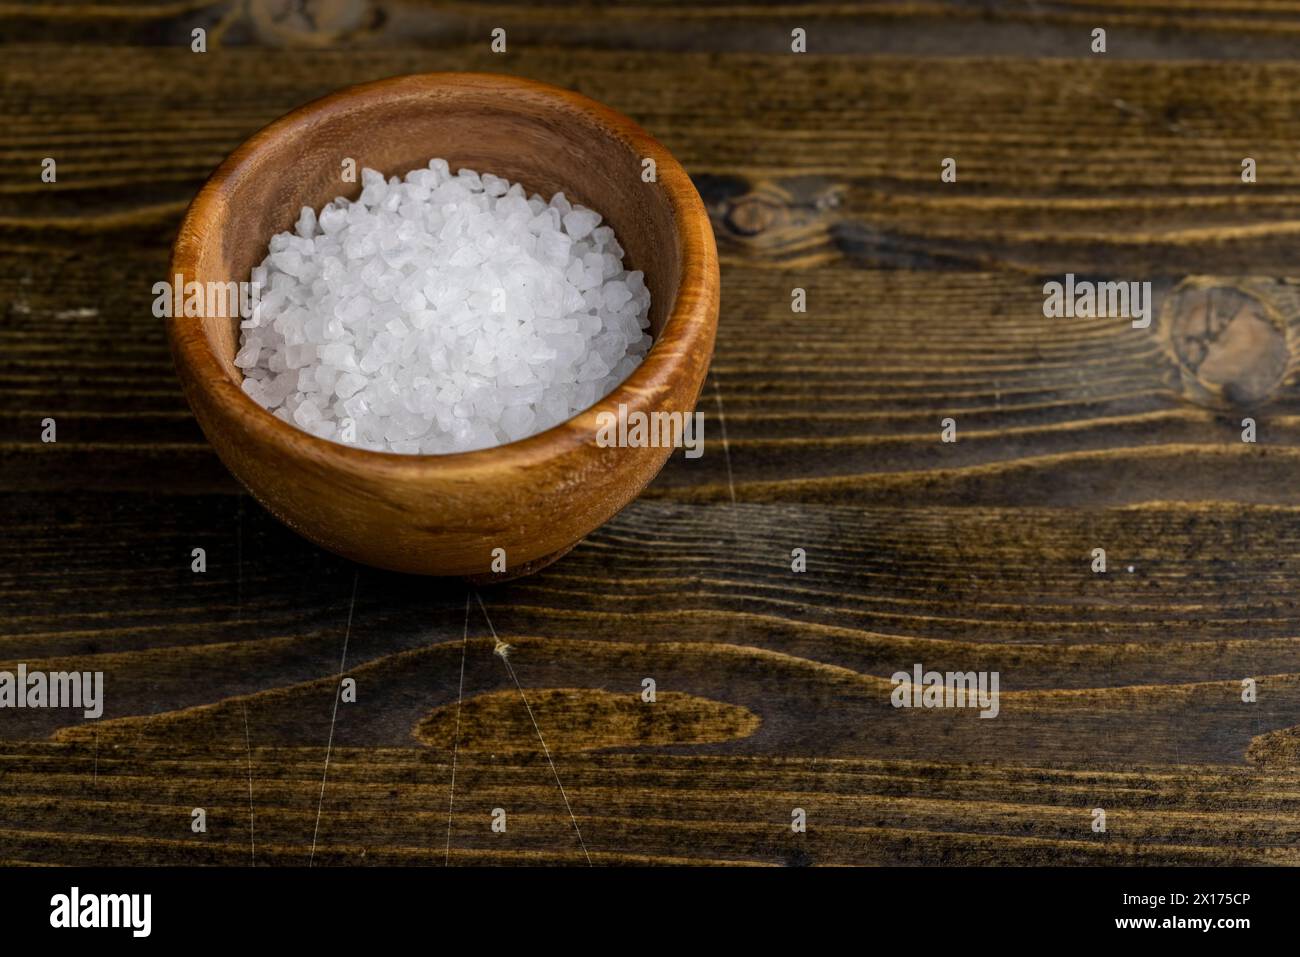 gros sel de mer pour la cuisson, grands cristaux de sel de mer pour ajouter à la nourriture Banque D'Images